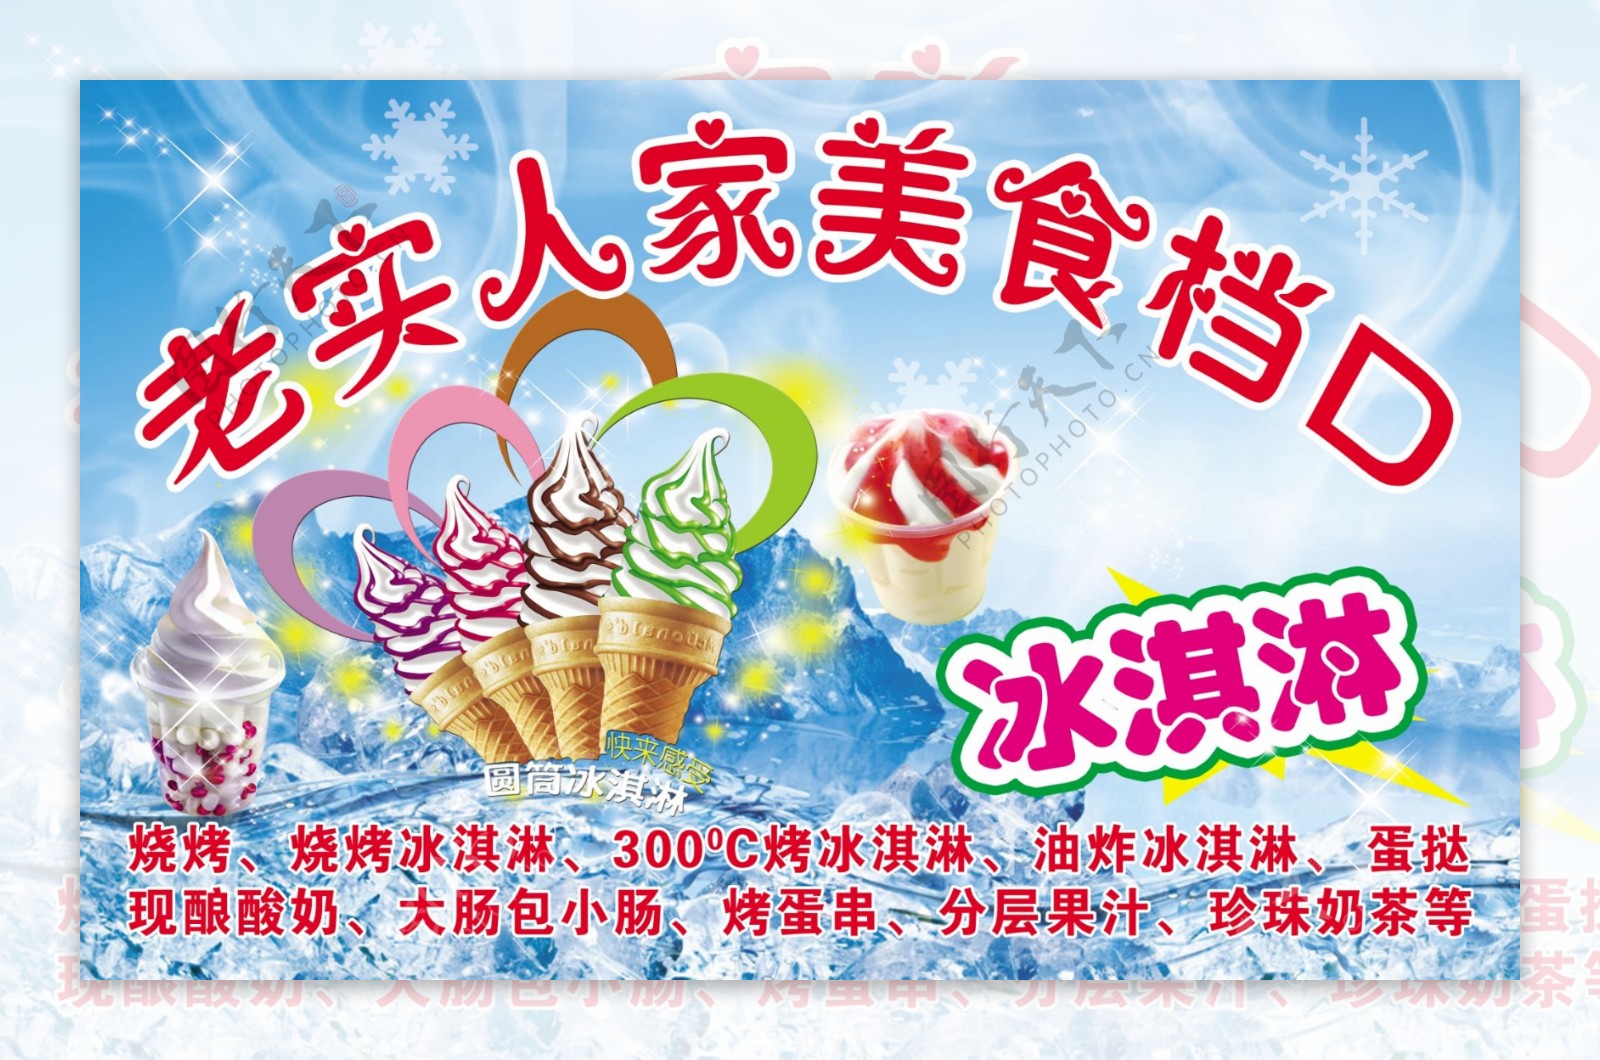 冰淇淋宣传广告图片